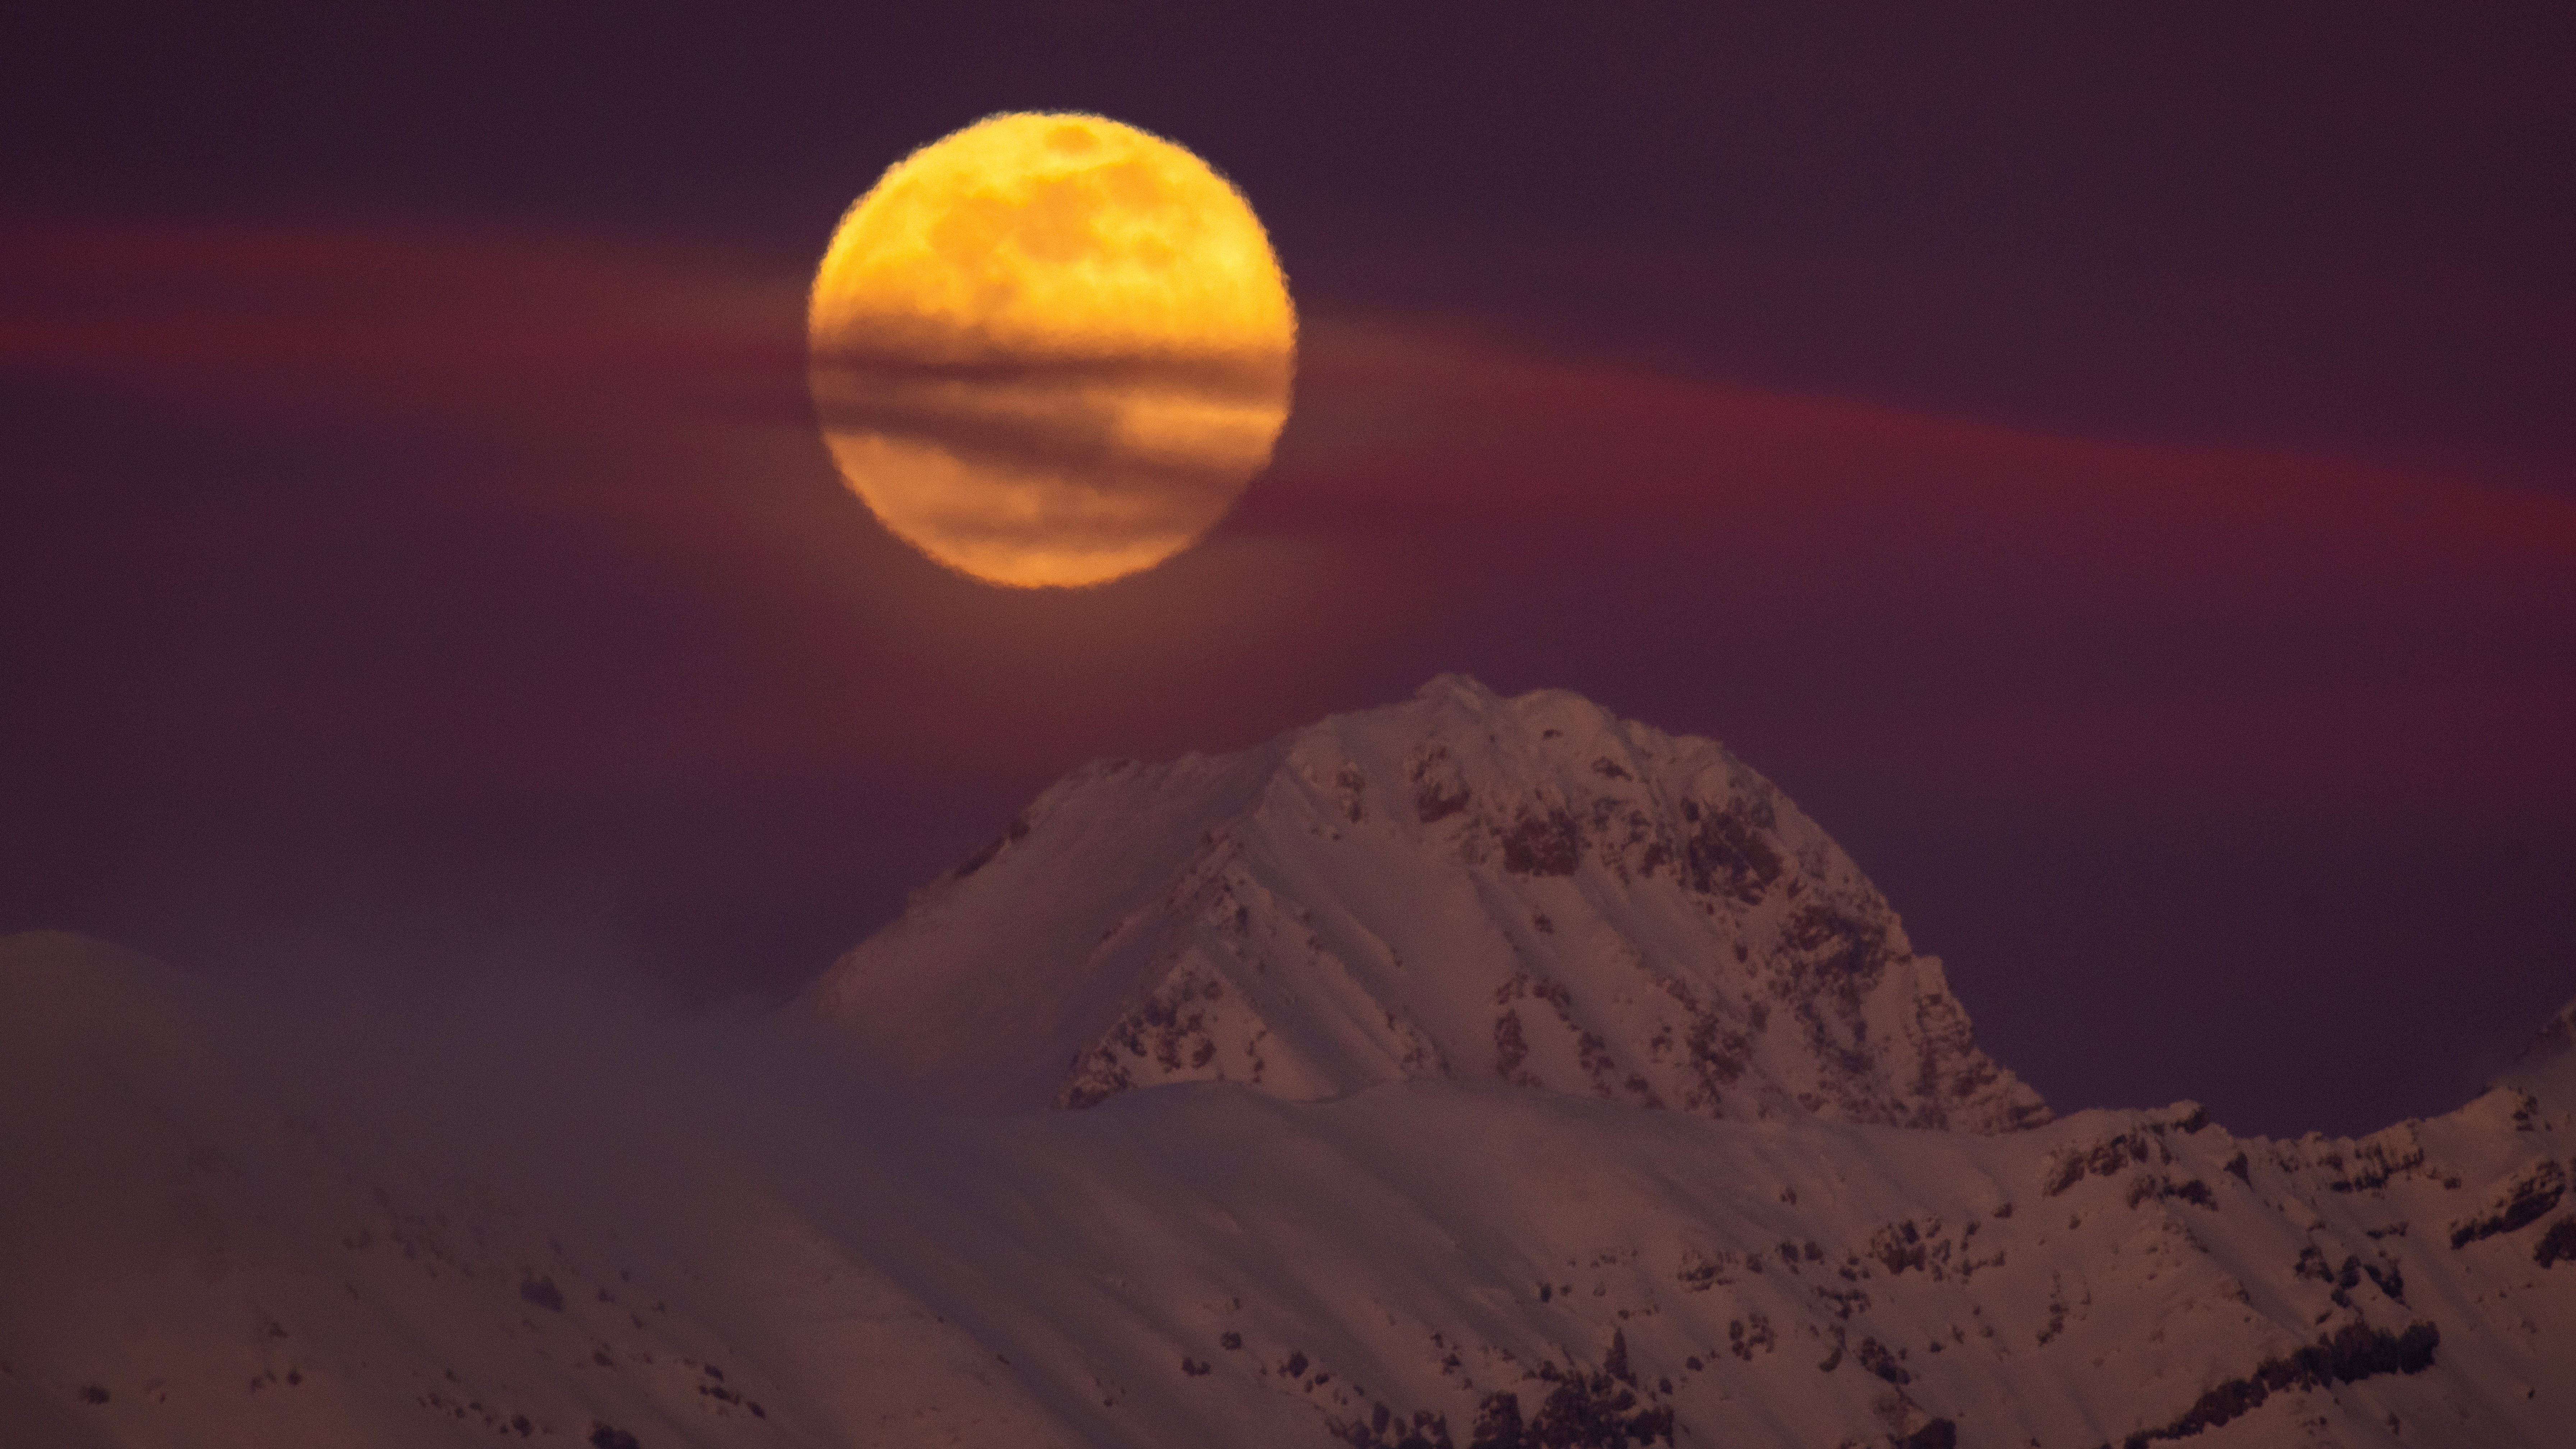 full moon over a mountain peak